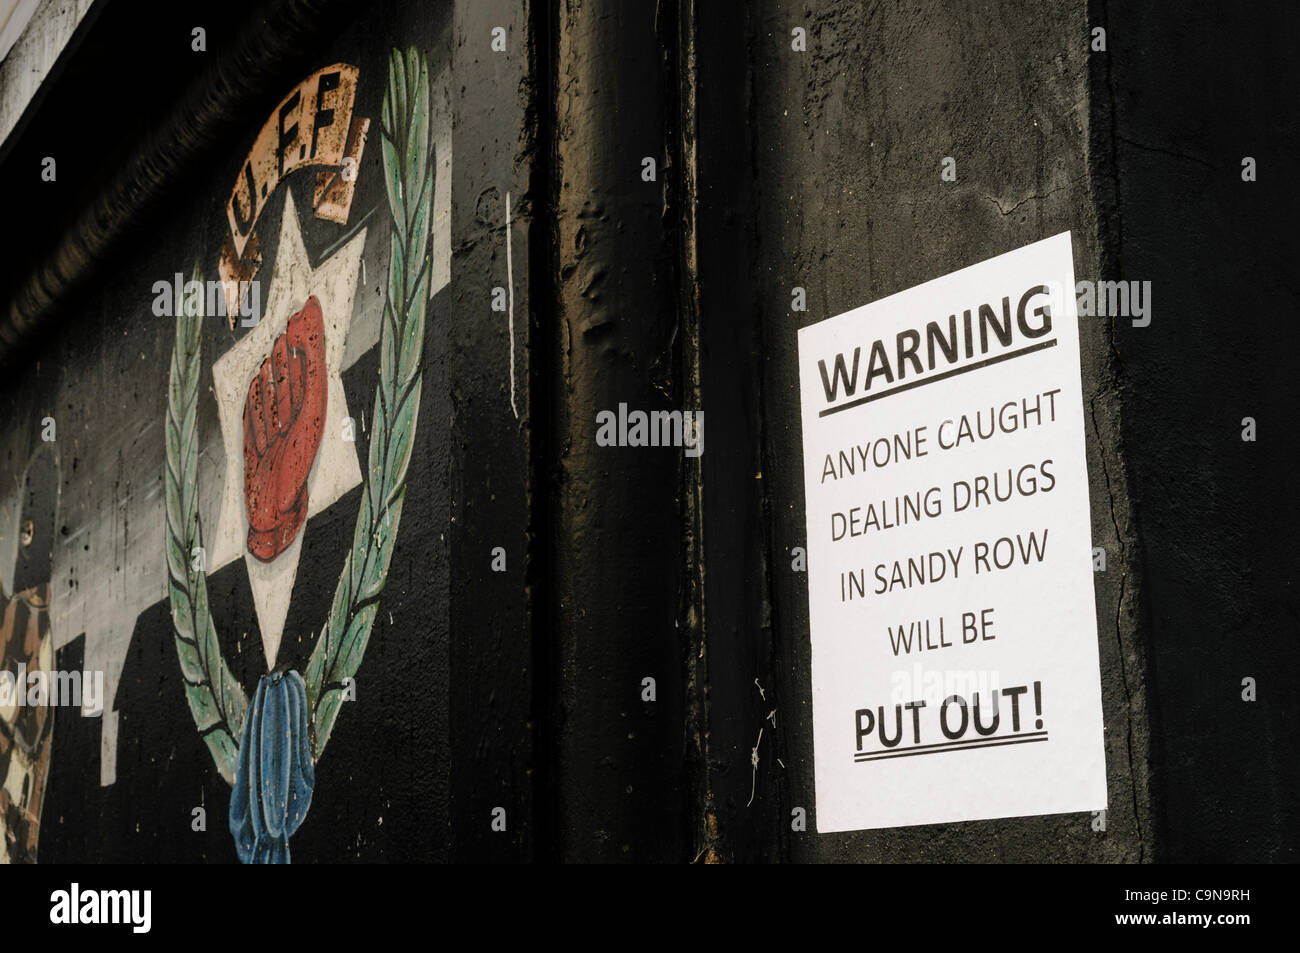 Plakate erscheinen über Nacht in Sandy Row Warnung Drogendealer, dass sie "Setzen werden" des Gebiets.  Es wird vermutet, dass hinter dem Umzug der Ulster Defence Association ist. BELFAST. 30.01.2012 Stockfoto